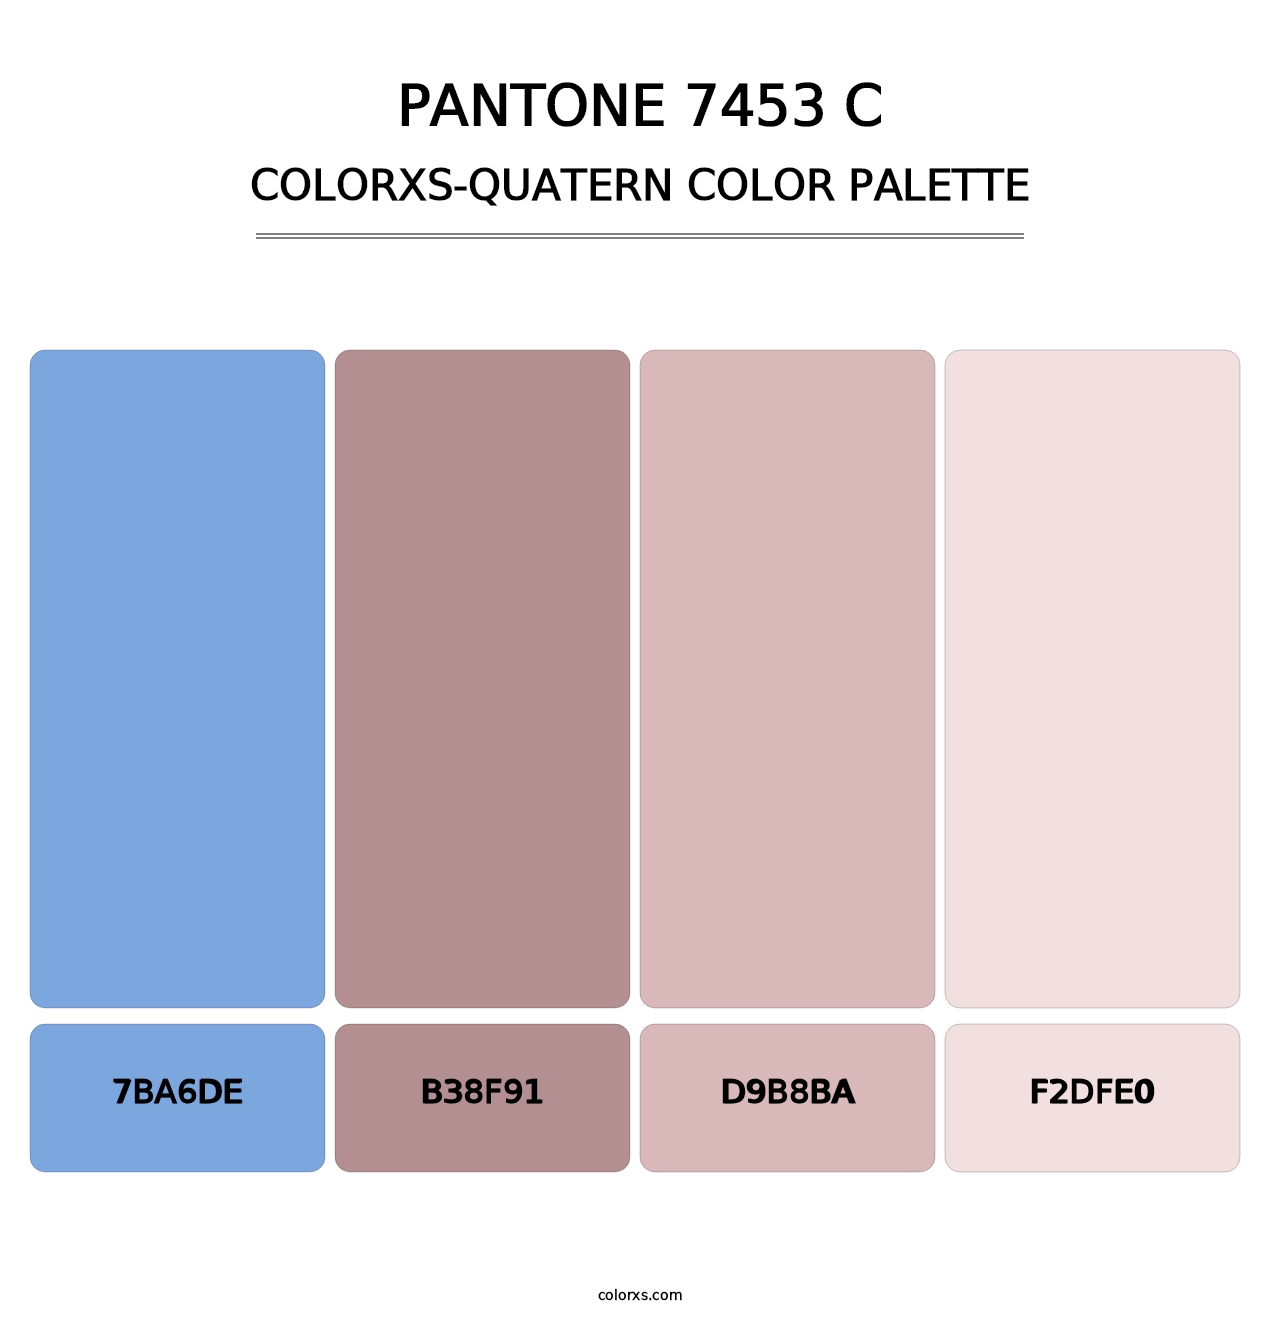 PANTONE 7453 C - Colorxs Quatern Palette